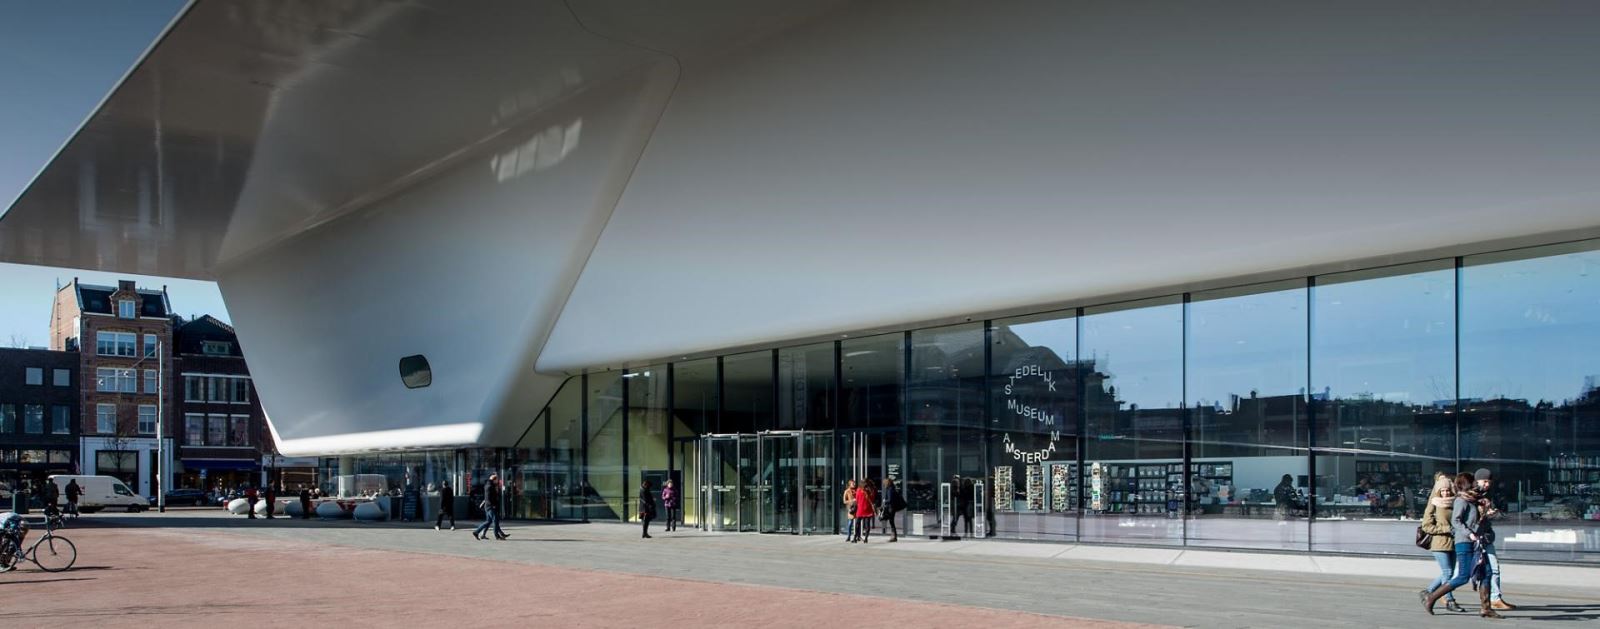 Crystal Tourniket được sử dụng tại bảo tàng Stedelijk Amsterdam, Hà Lan